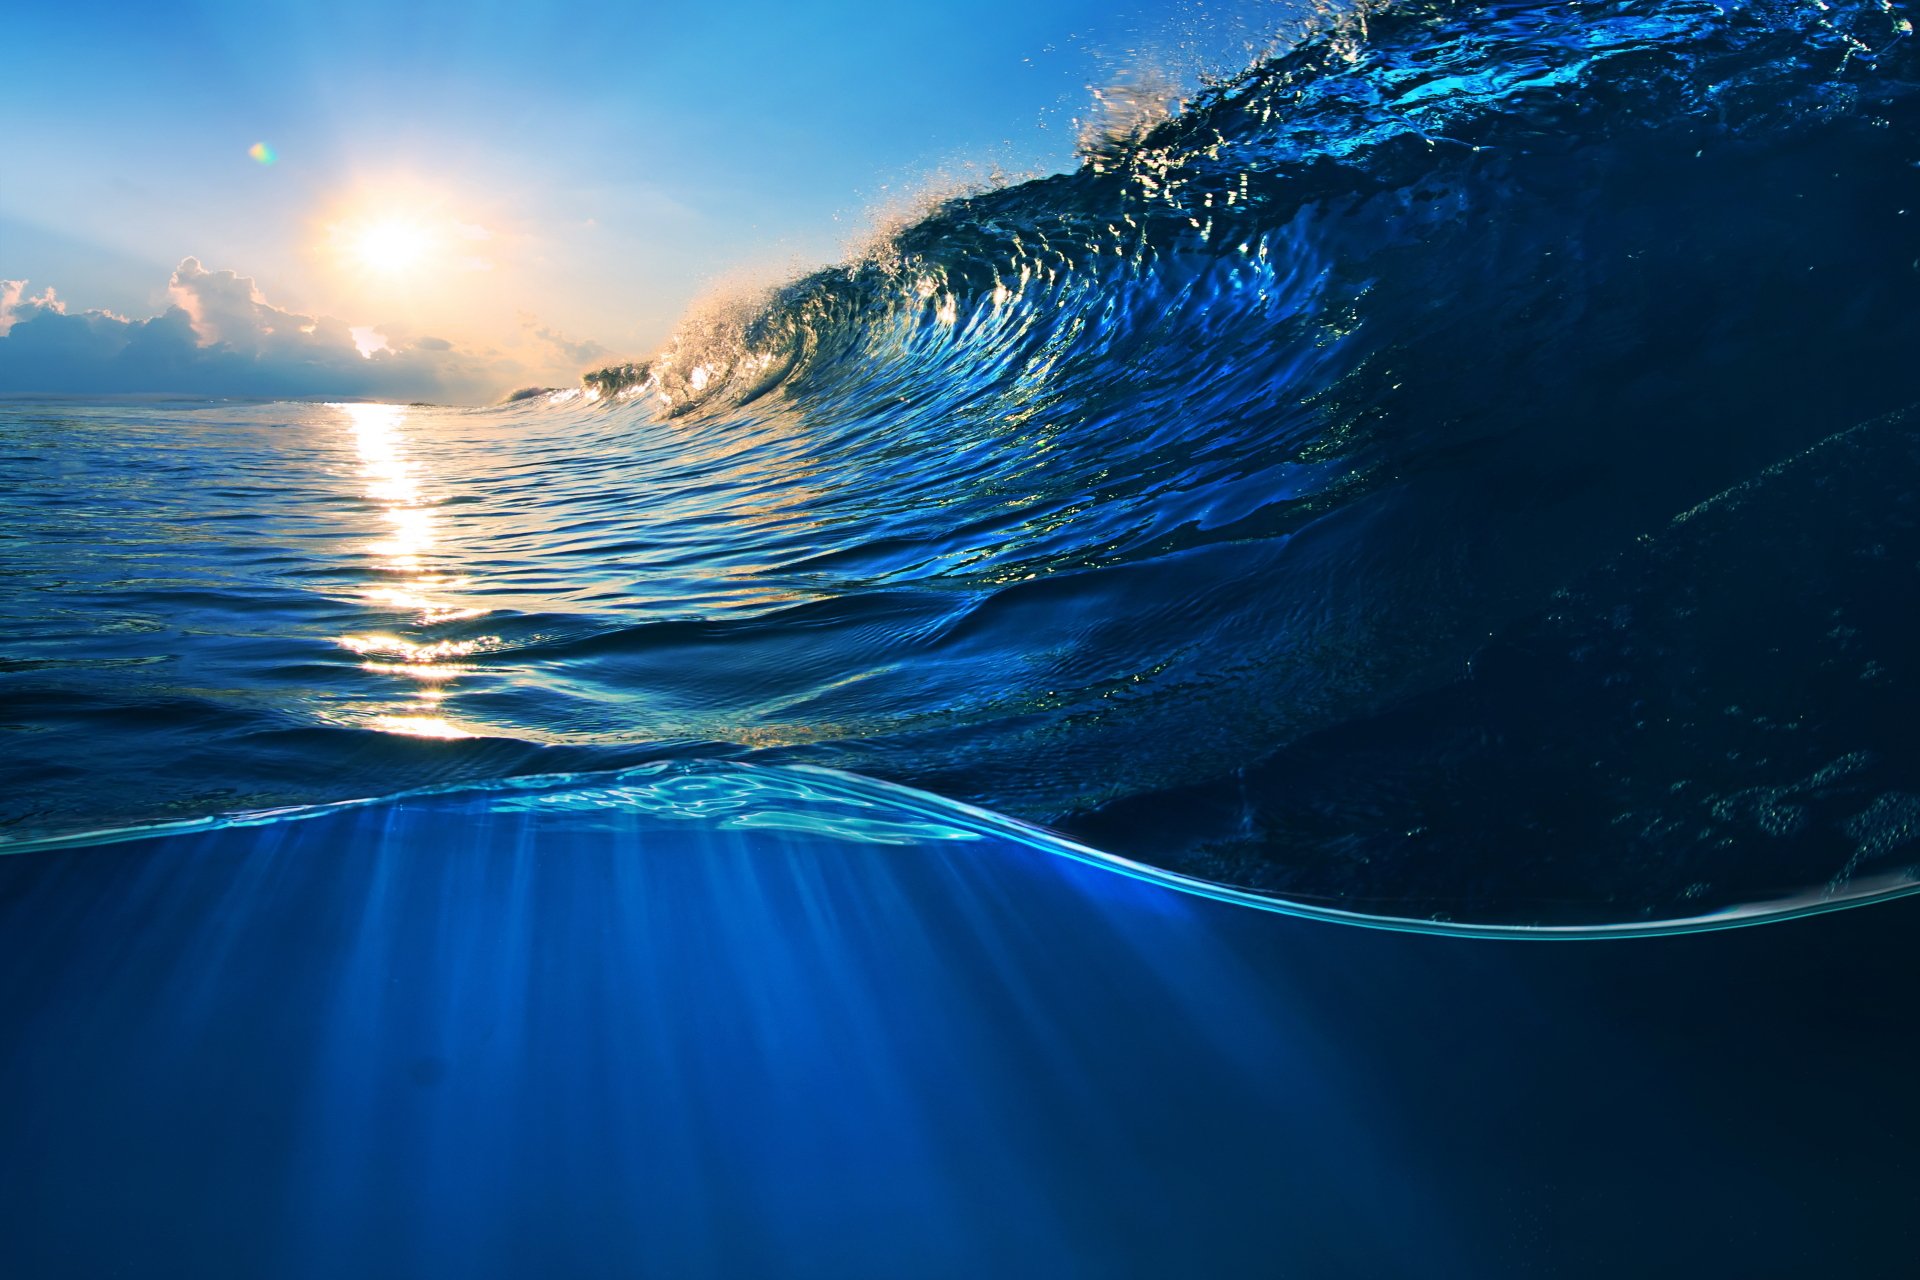 Hình nền đại dương sẽ khiến bạn không thể rời mắt khỏi màn hình. Bạn sẽ bị mê hoặc bởi sức mạnh và vẻ đẹp của những con sóng dữ dội cùng những sinh vật độc đáo sống dưới đáy biển.